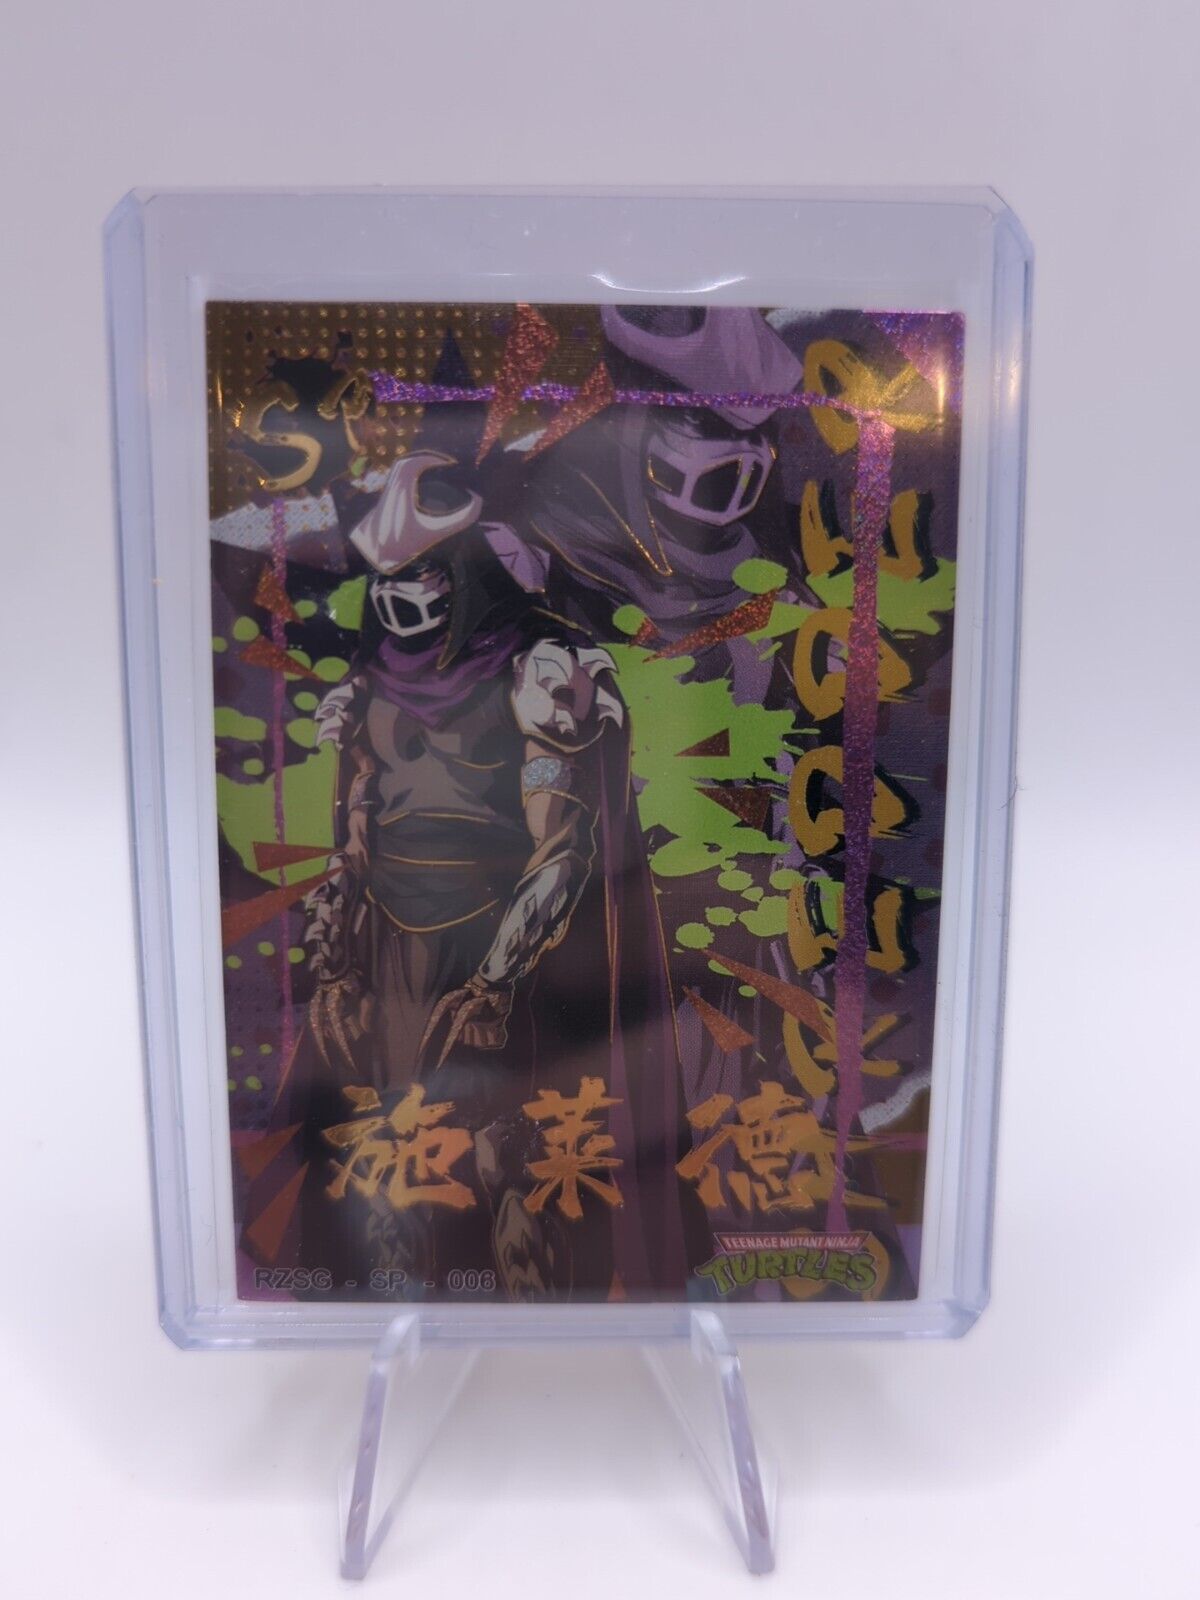 TMNT Rise Of The Teenage Mutant Ninja Turtles Card RZSG - SP - 006 246/250